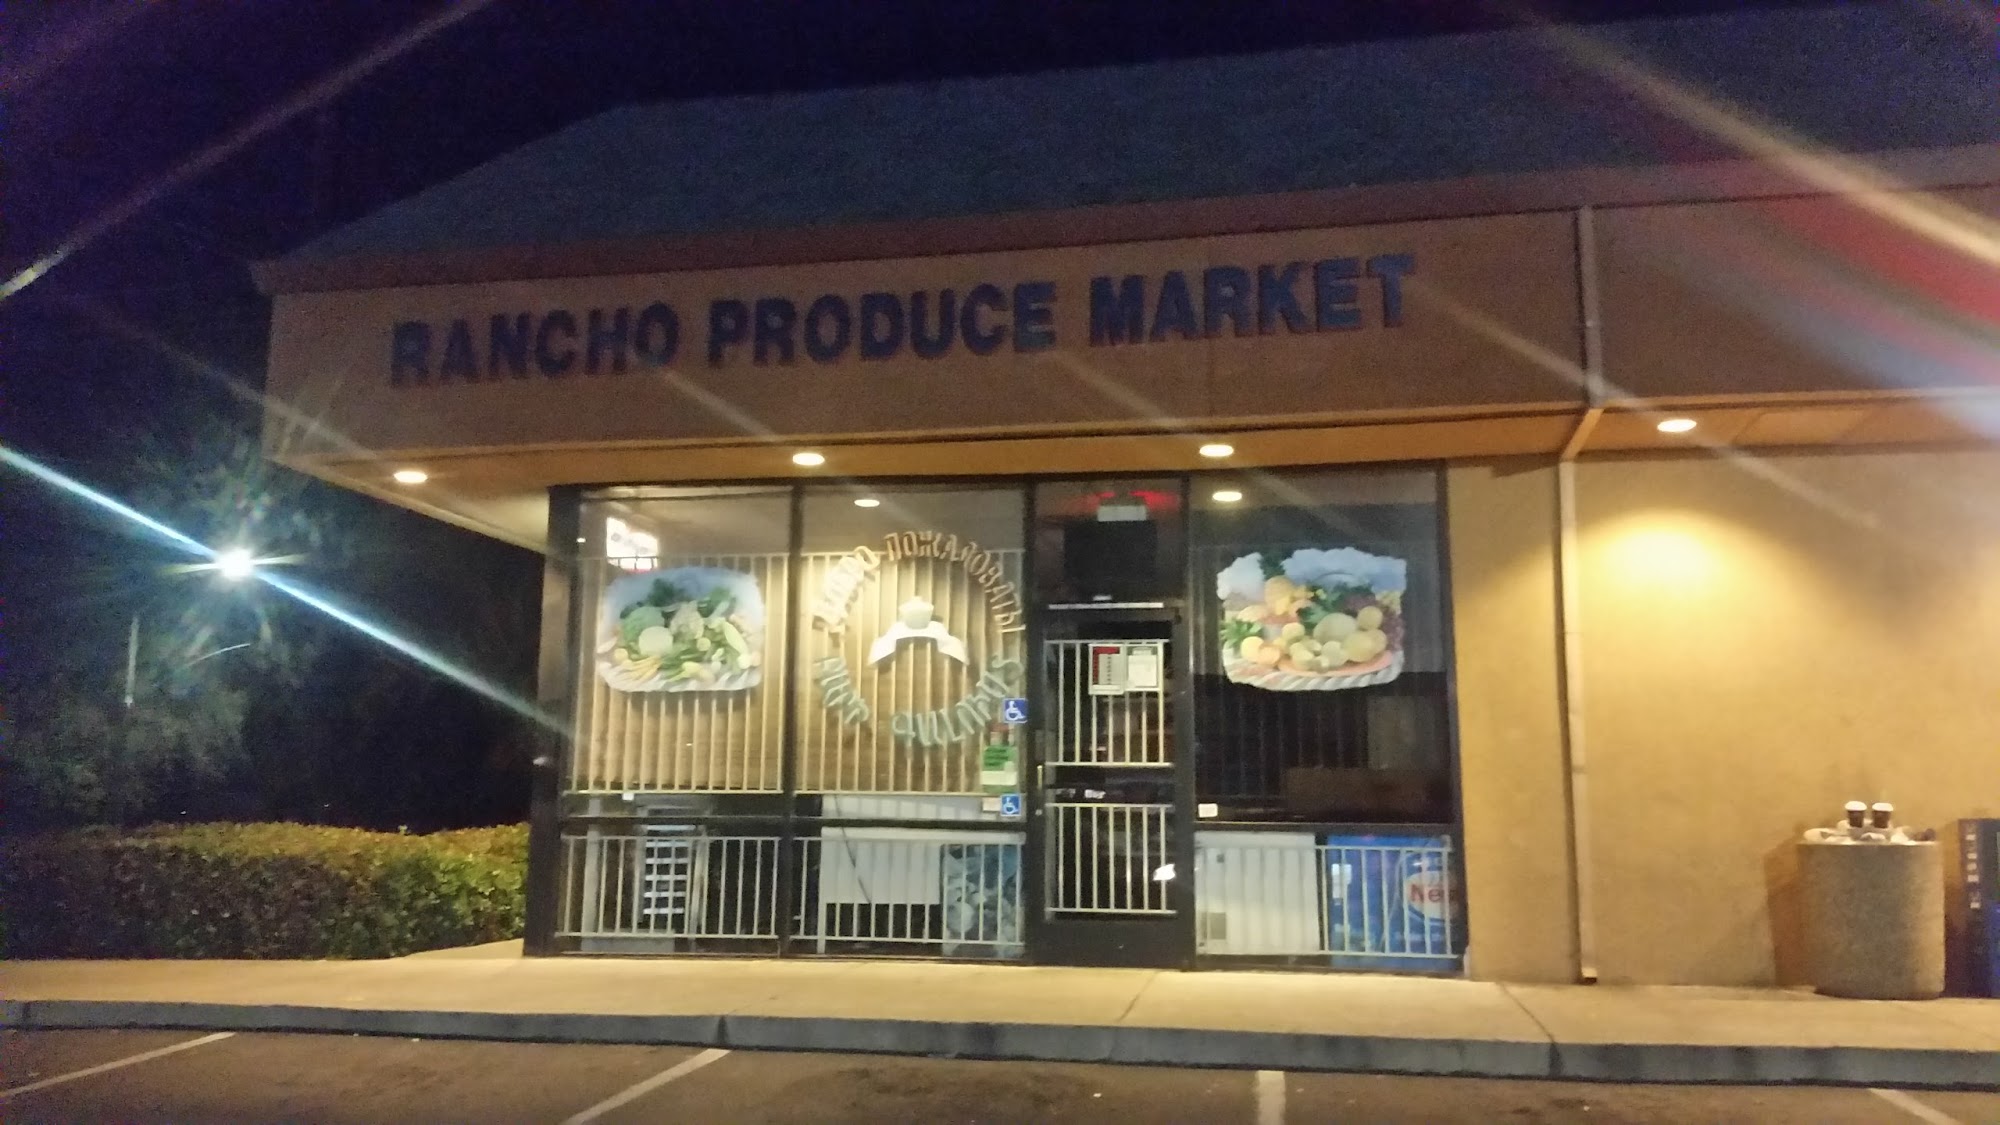 Rancho Produce Market